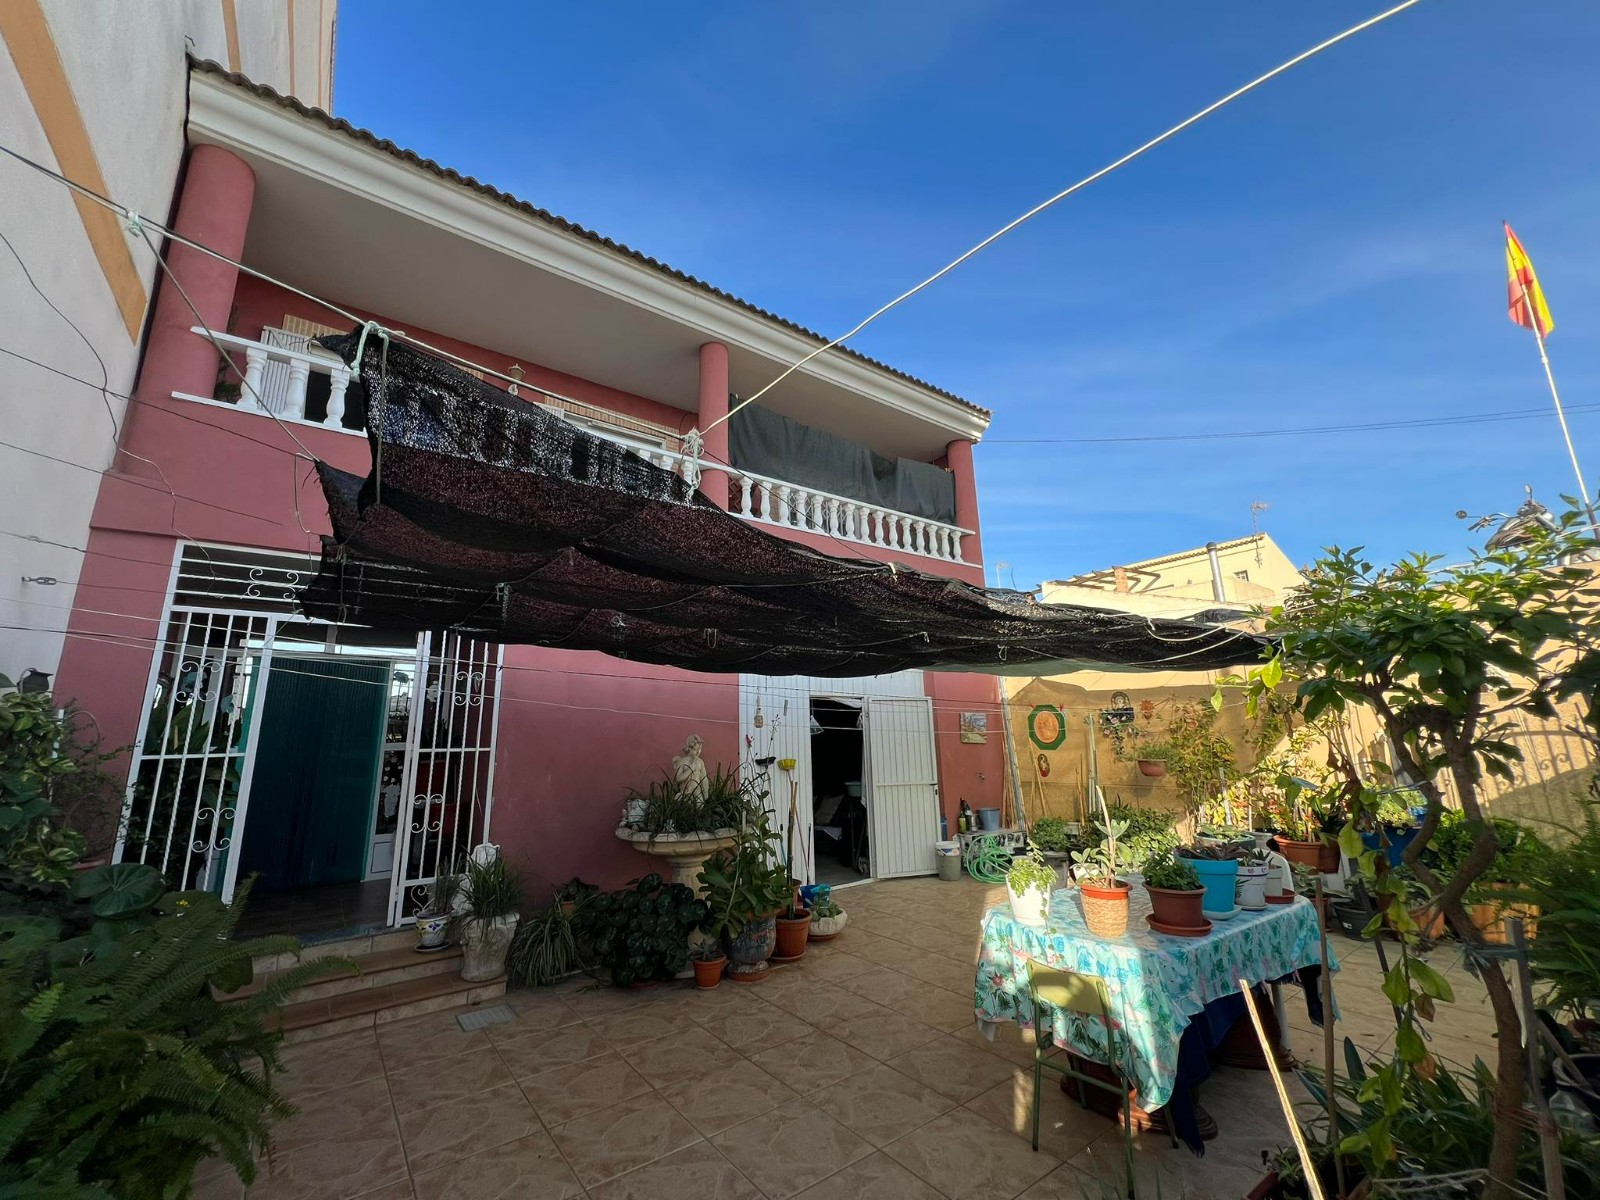 4 bedroom house / villa for sale in Formentera Del Segura, Costa Blanca